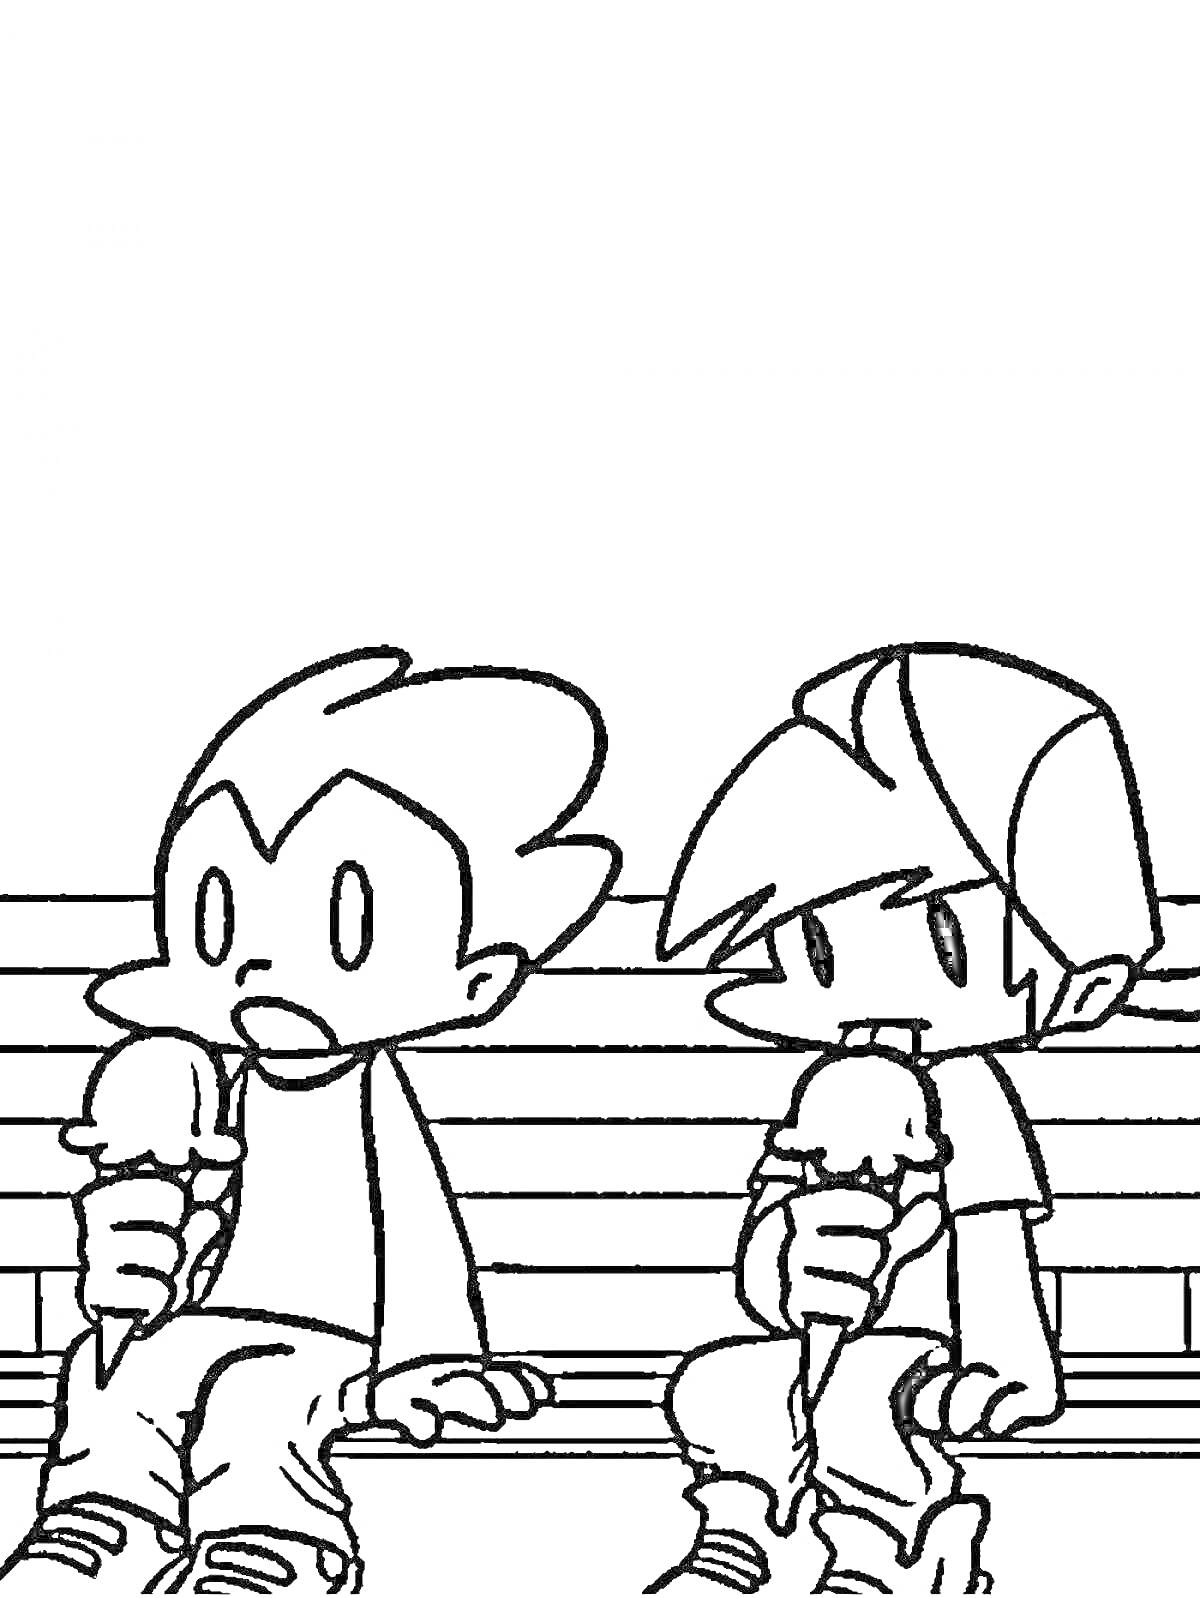 Раскраска Два персонажа из Friday Night Funkin сидят на скамейке и едят мороженое